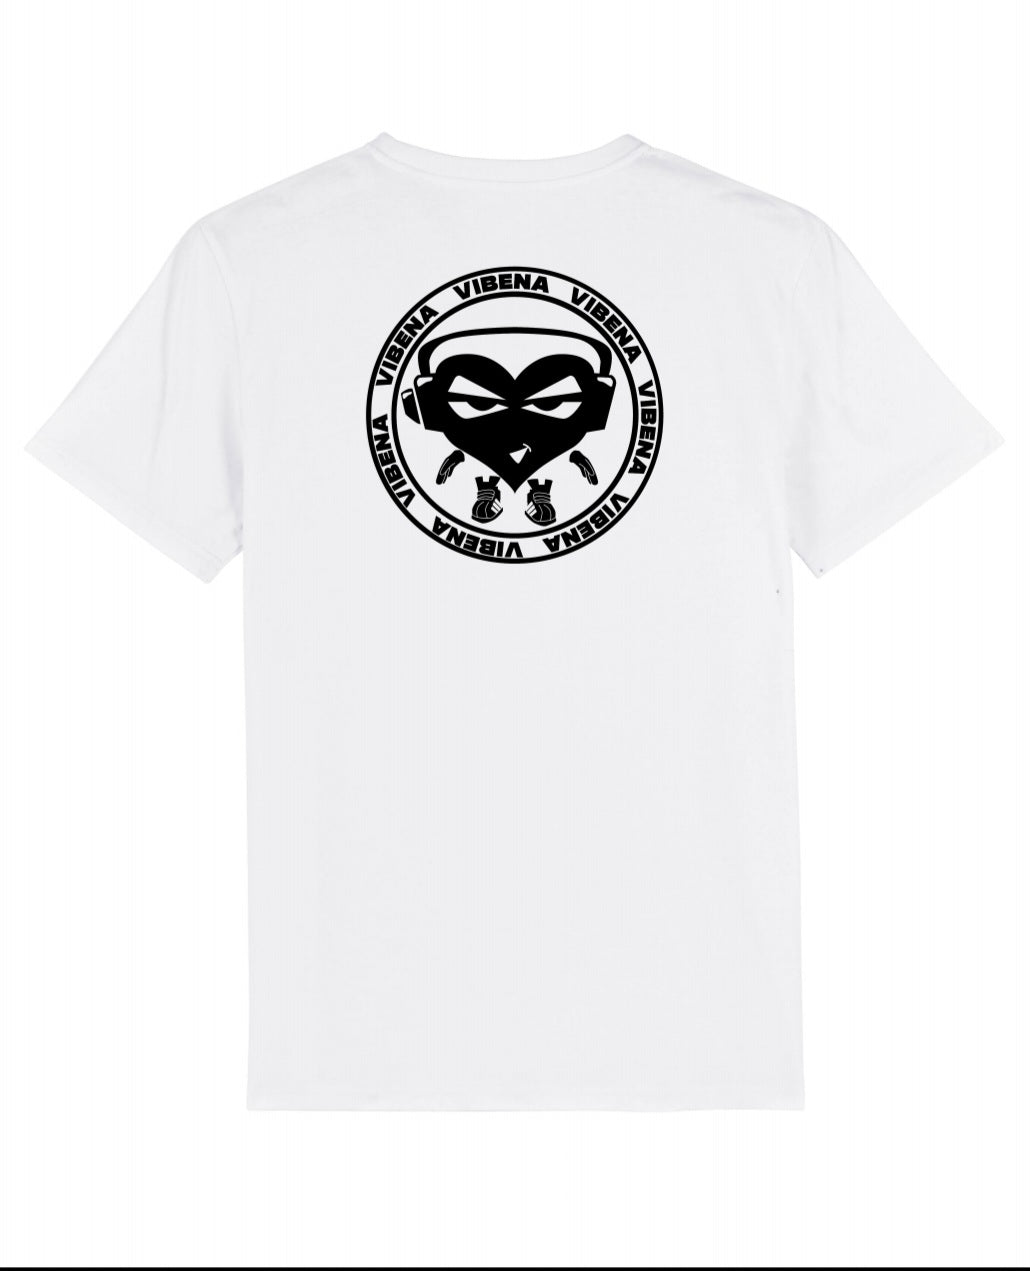 Vibena new style t-shirt. White with black Vibena character logo (front and back logo) **Free UK Postage**